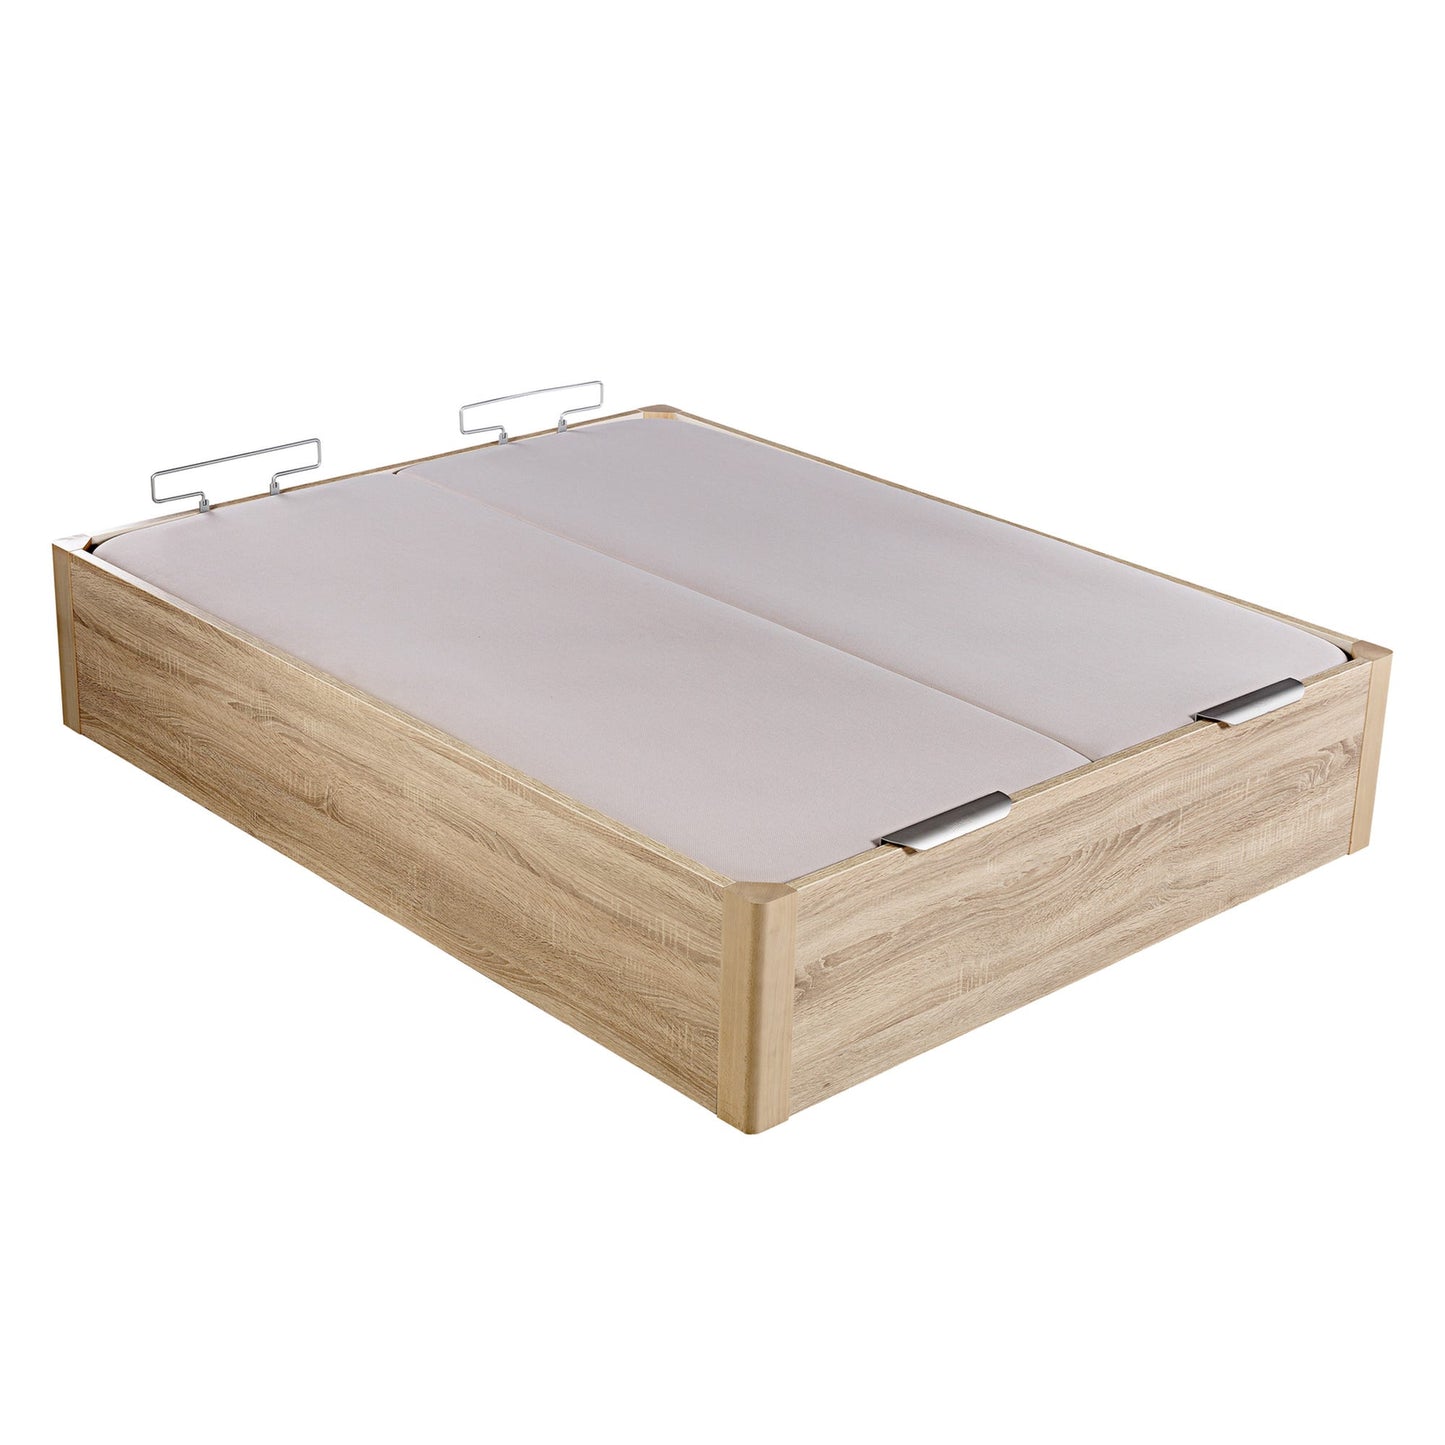 Canapé abatible de madera de alta capacidad tapa doble de color natural - DESIGN - 200x210